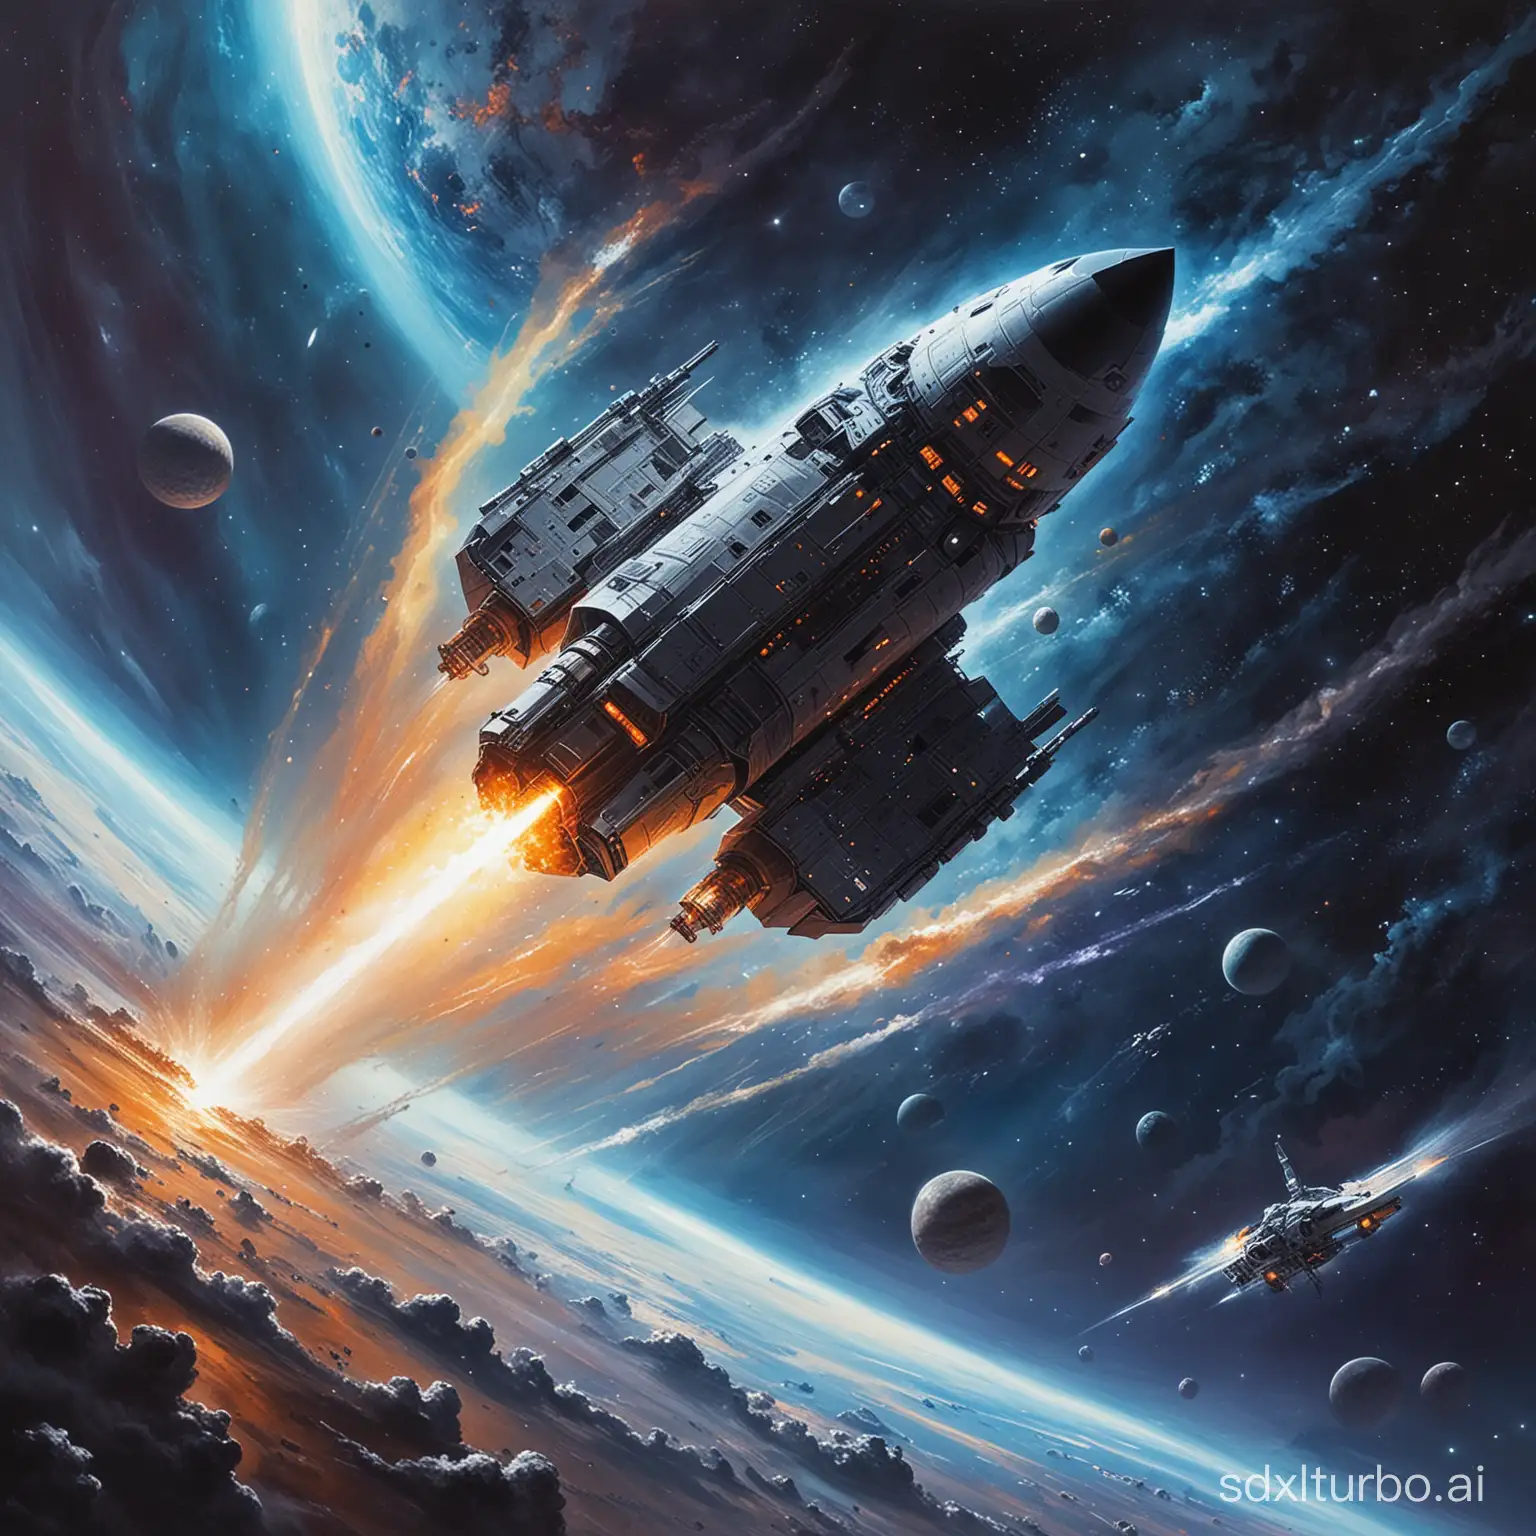 Vibrant-Space-Station-Orbiting-Alien-Planet-Artwork